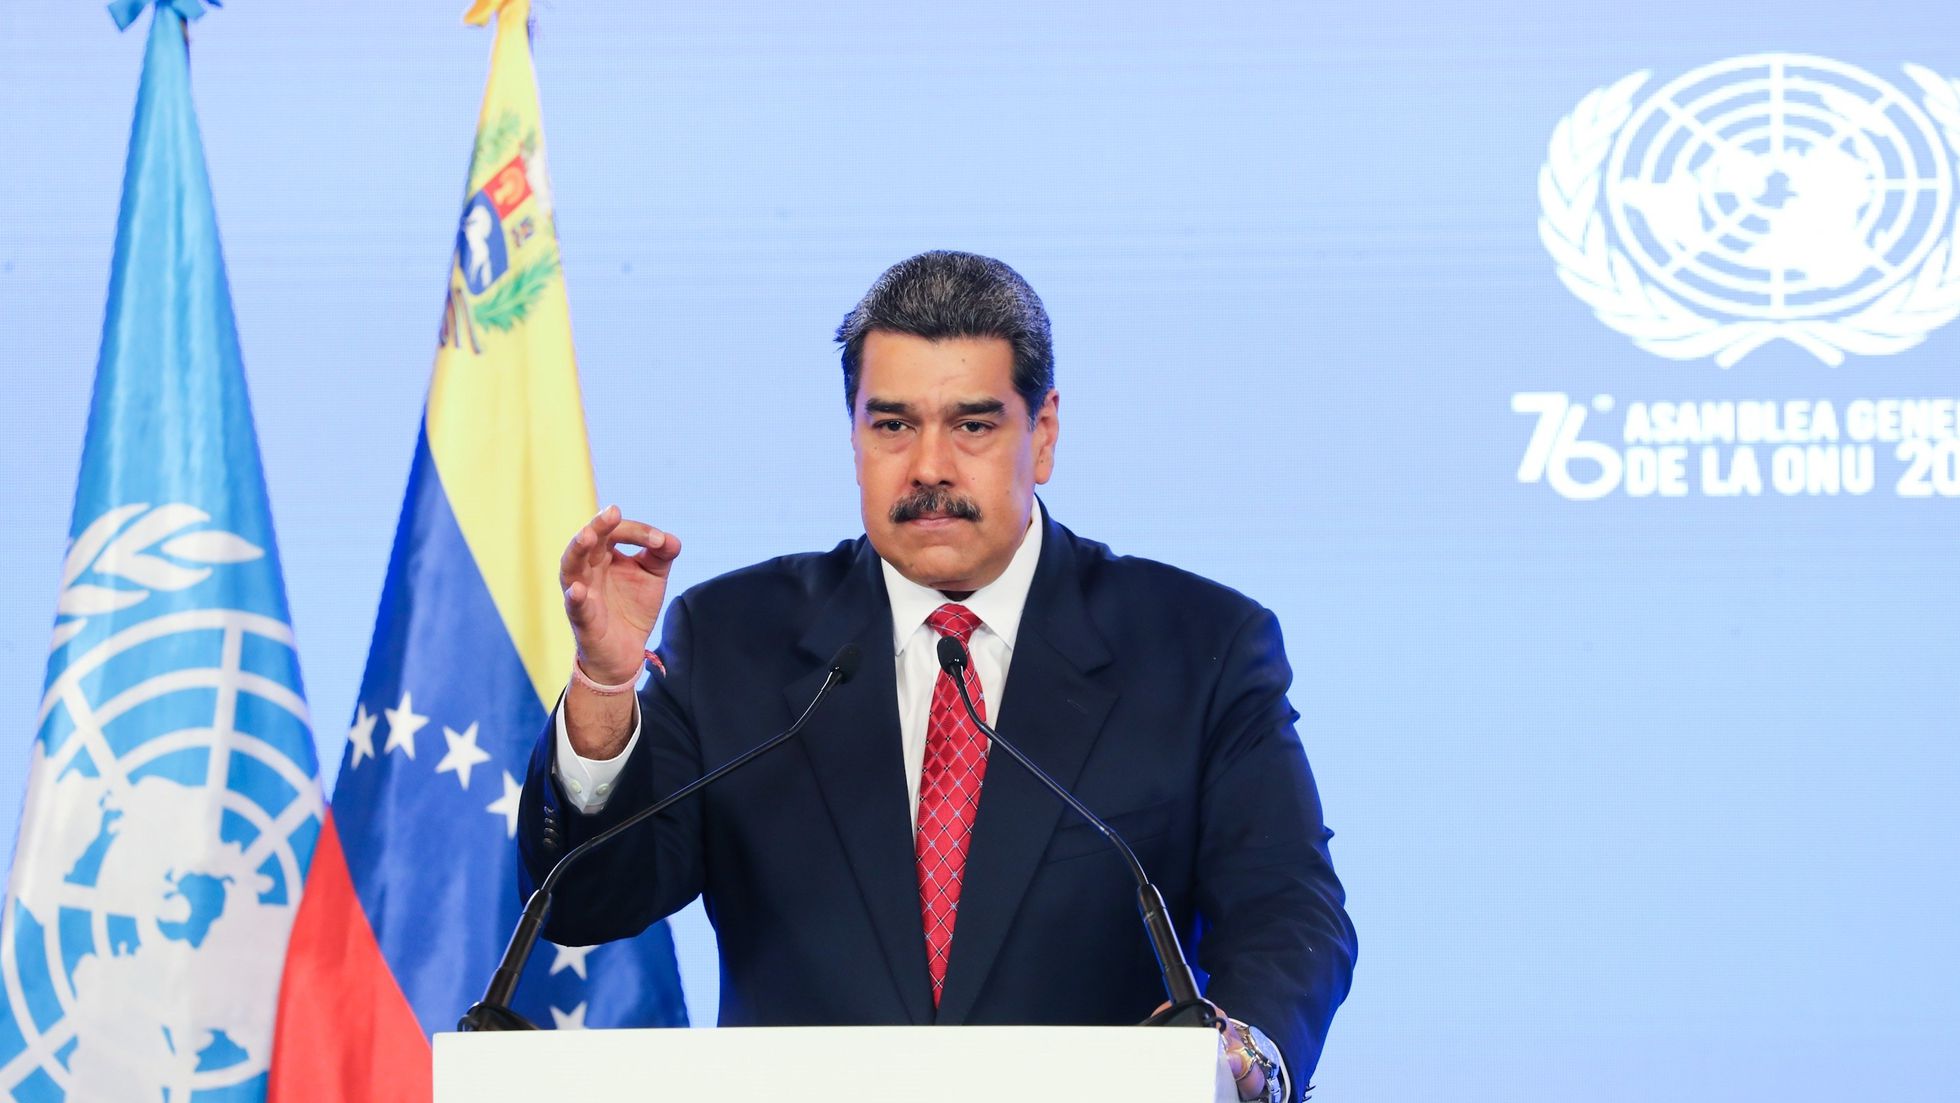 Con 503 medidas coercitivas unilaterales han buscado destruir la economía de Venezuela